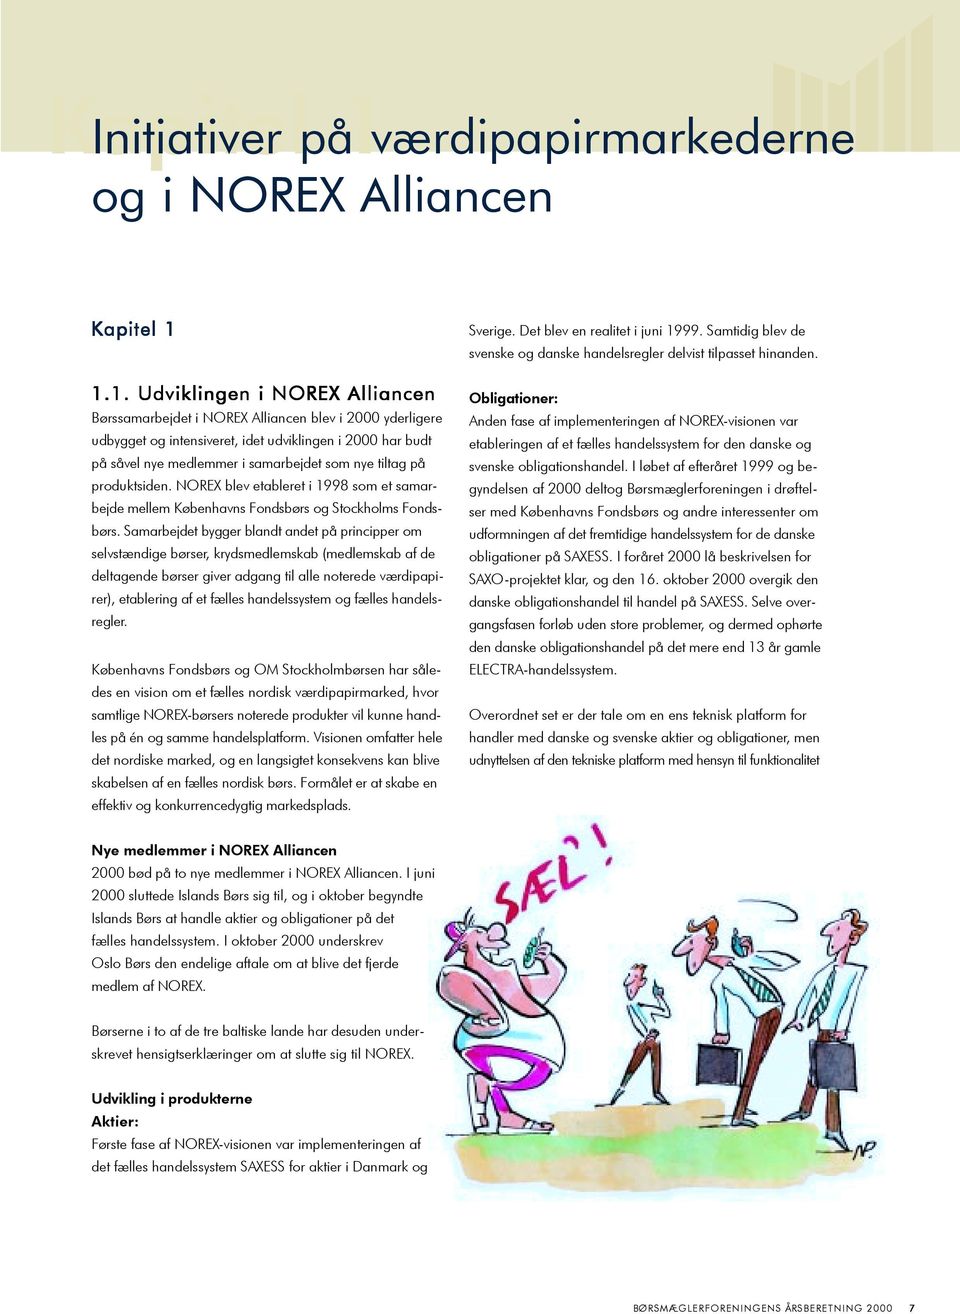 1.1. Udviklingen i NOREX Alliancen Børssamarbejdet i NOREX Alliancen blev i 2000 yderligere udbygget og intensiveret, idet udviklingen i 2000 har budt på såvel nye medlemmer i samarbejdet som nye